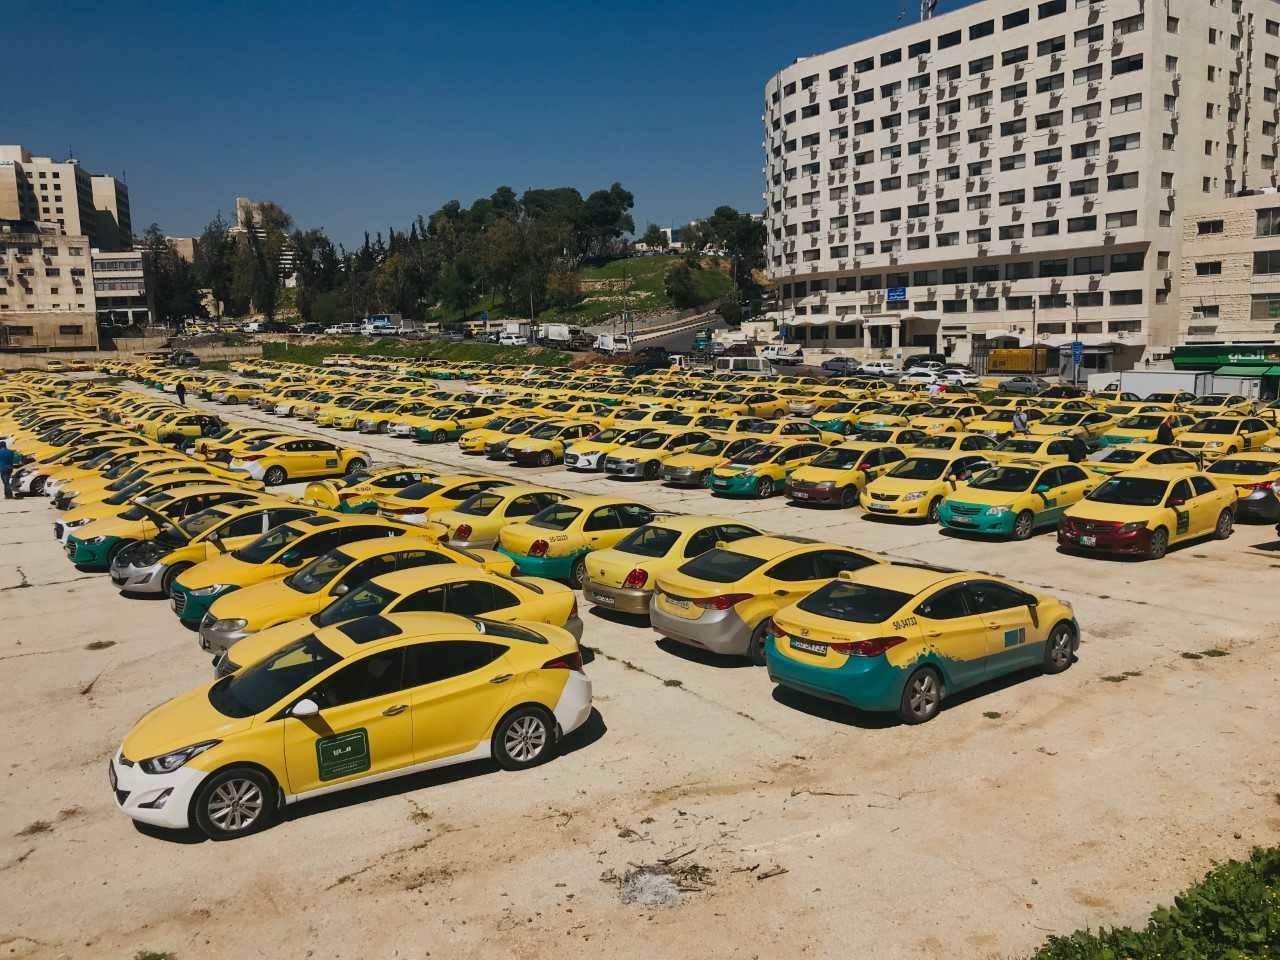 "التكسي الأصفر" يطالب بالسماح باستخدام السيارات الكهربائية – تقرير تلفزيوني